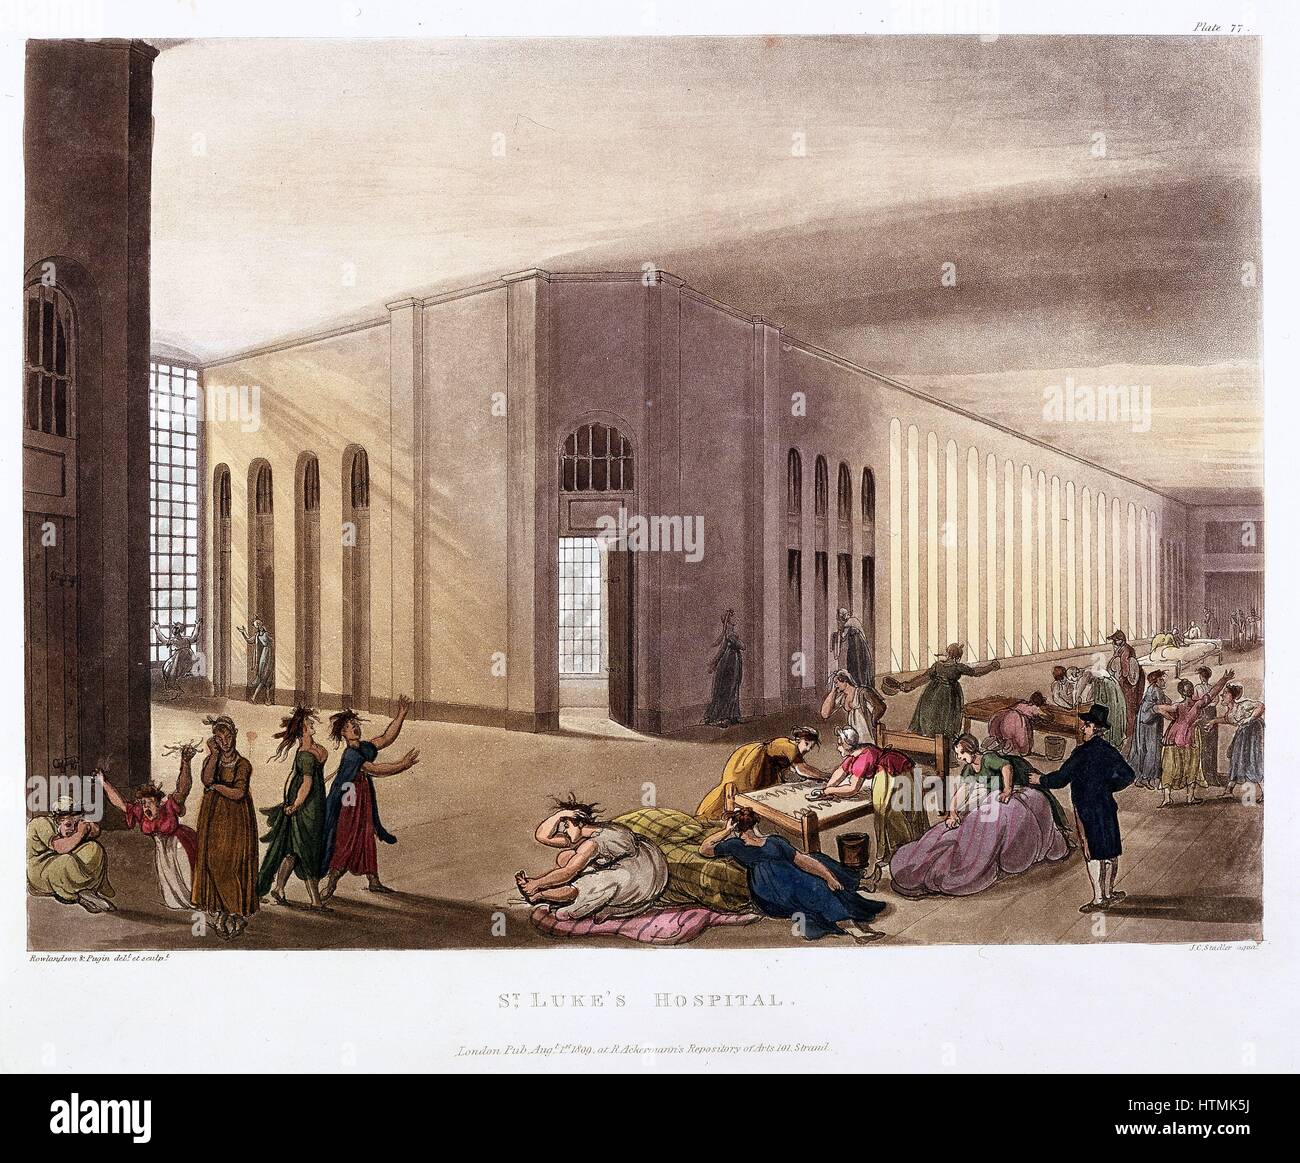 À l'hôpital, Old Street, Londres. Lunatic Asylum. Les patientes dans leur galerie. Chaque patient avait propre chambre. Architecte, George Dance jnr (1741-1825). À partir de 'Le microcosme de Londres', Ackermann, Londres, 1808-1811. L'Illustre Pugin et Rowlandson. Banque D'Images